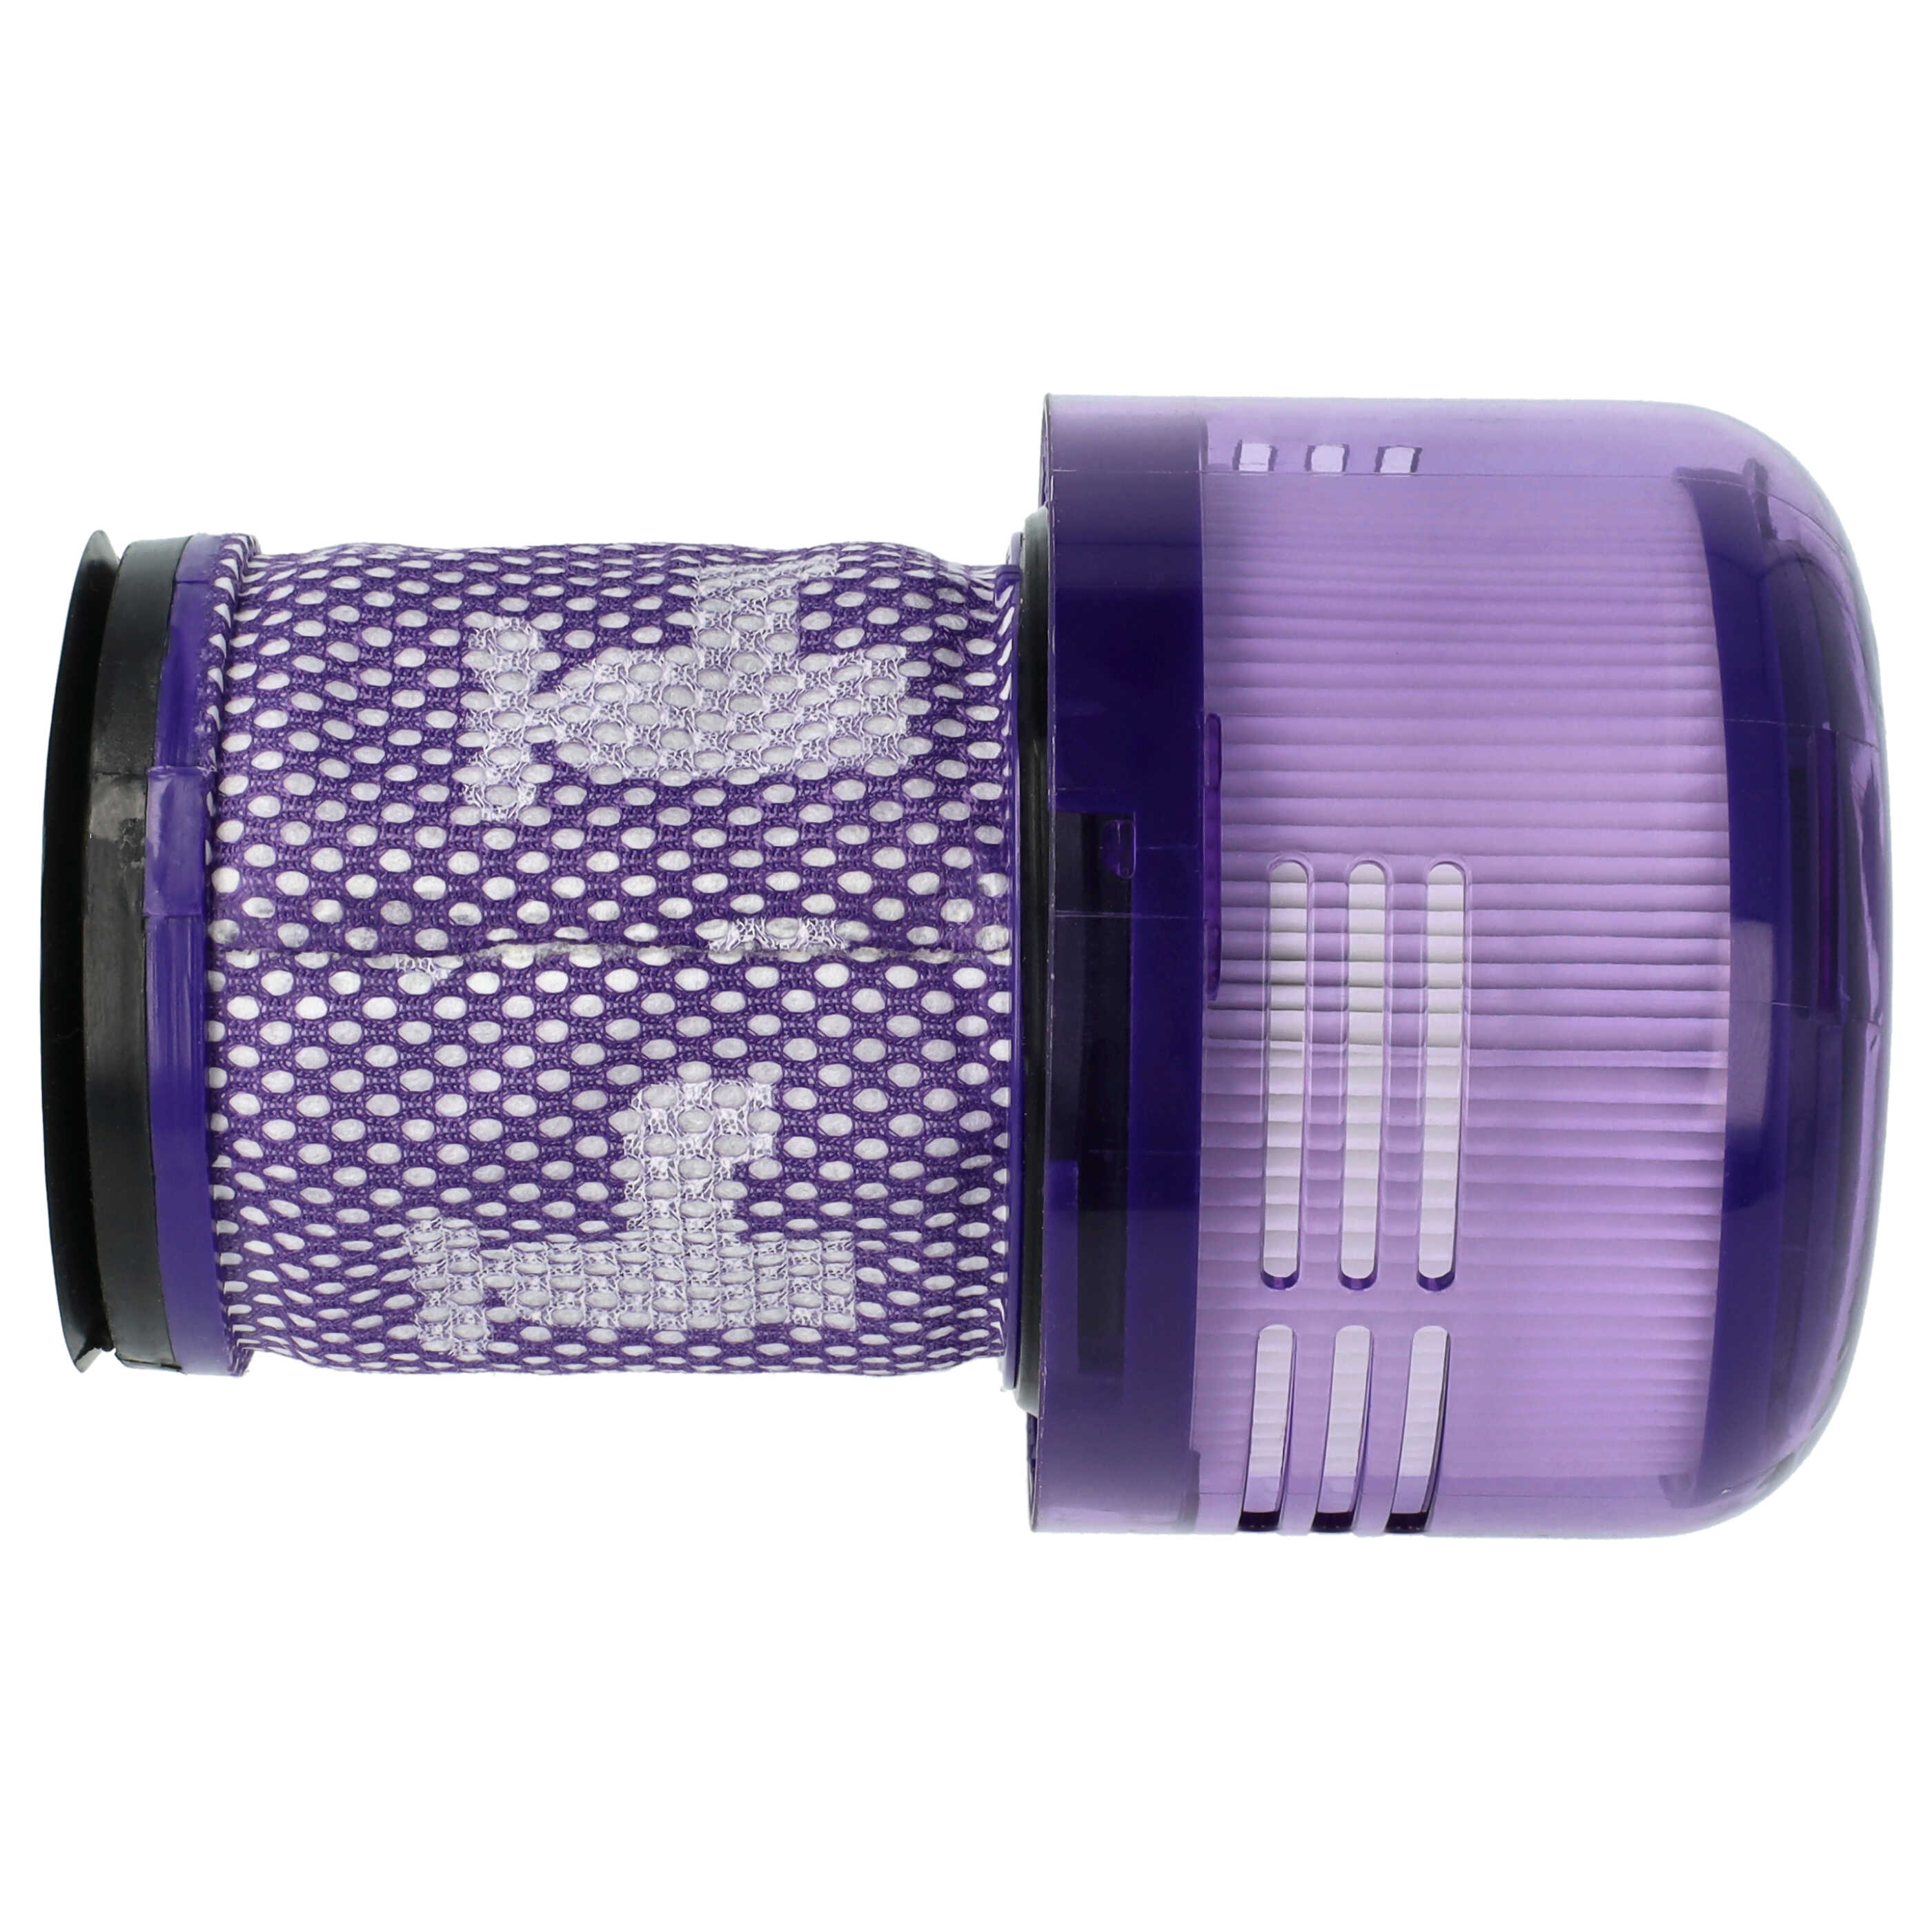 Filtro sostituisce Dyson 971517-01 per aspirapolvere - filtro HEPA, bianco / lilla